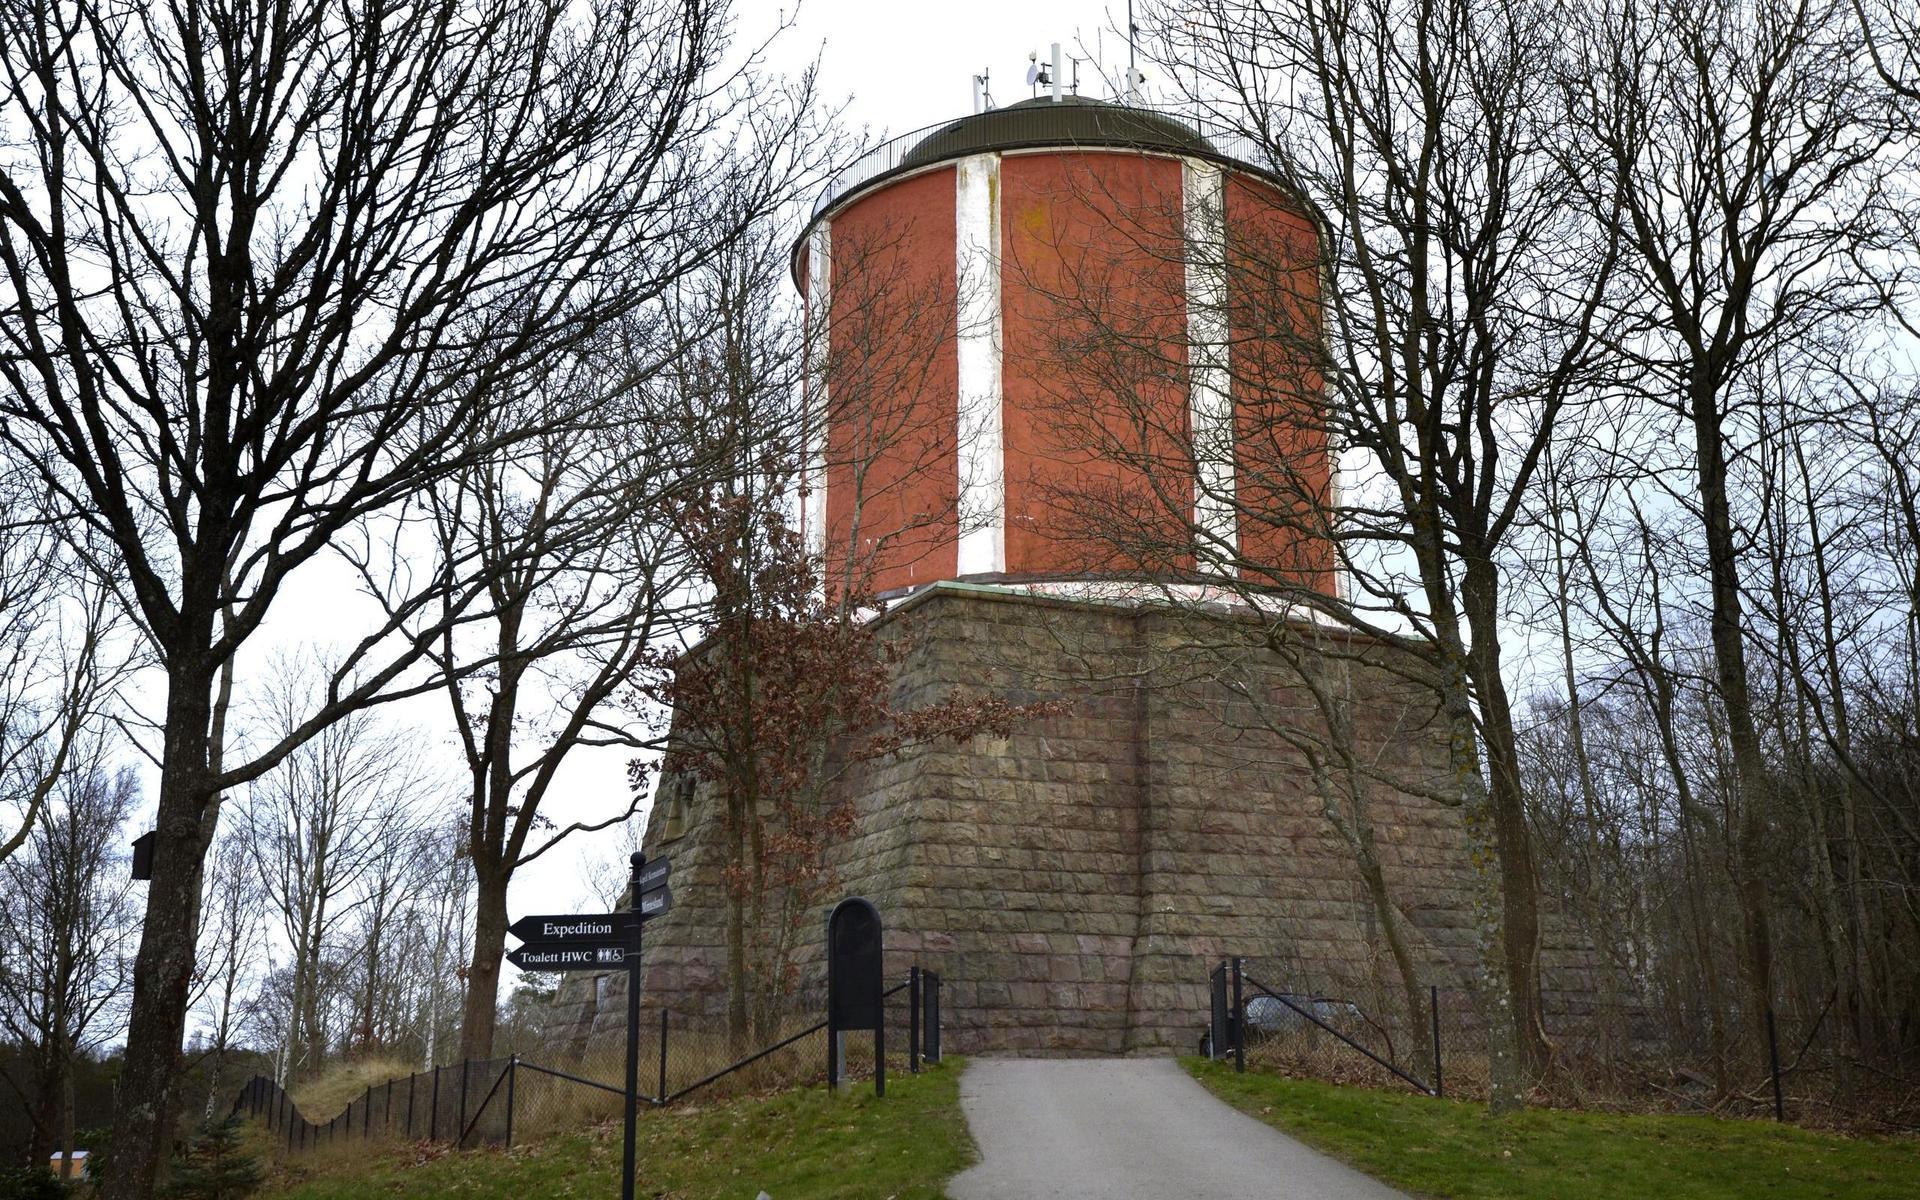 Ann-Charlott Stenkil vill att det gamla vattentornet i Varberg ska bli kolumbarium – ett valv där gravurnor förvaras.